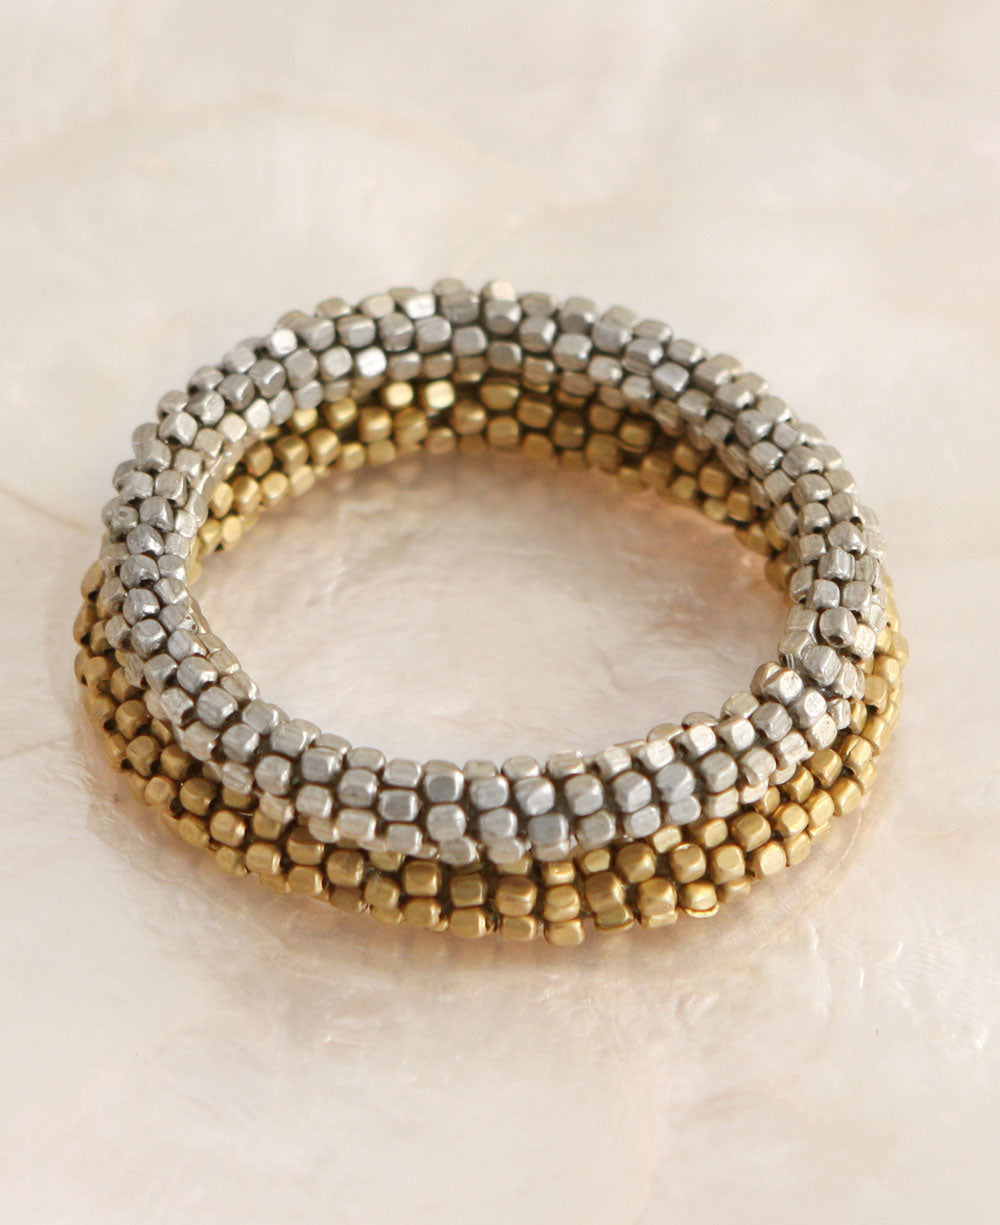 Metallic Bead Naga Bracelet, Nepal